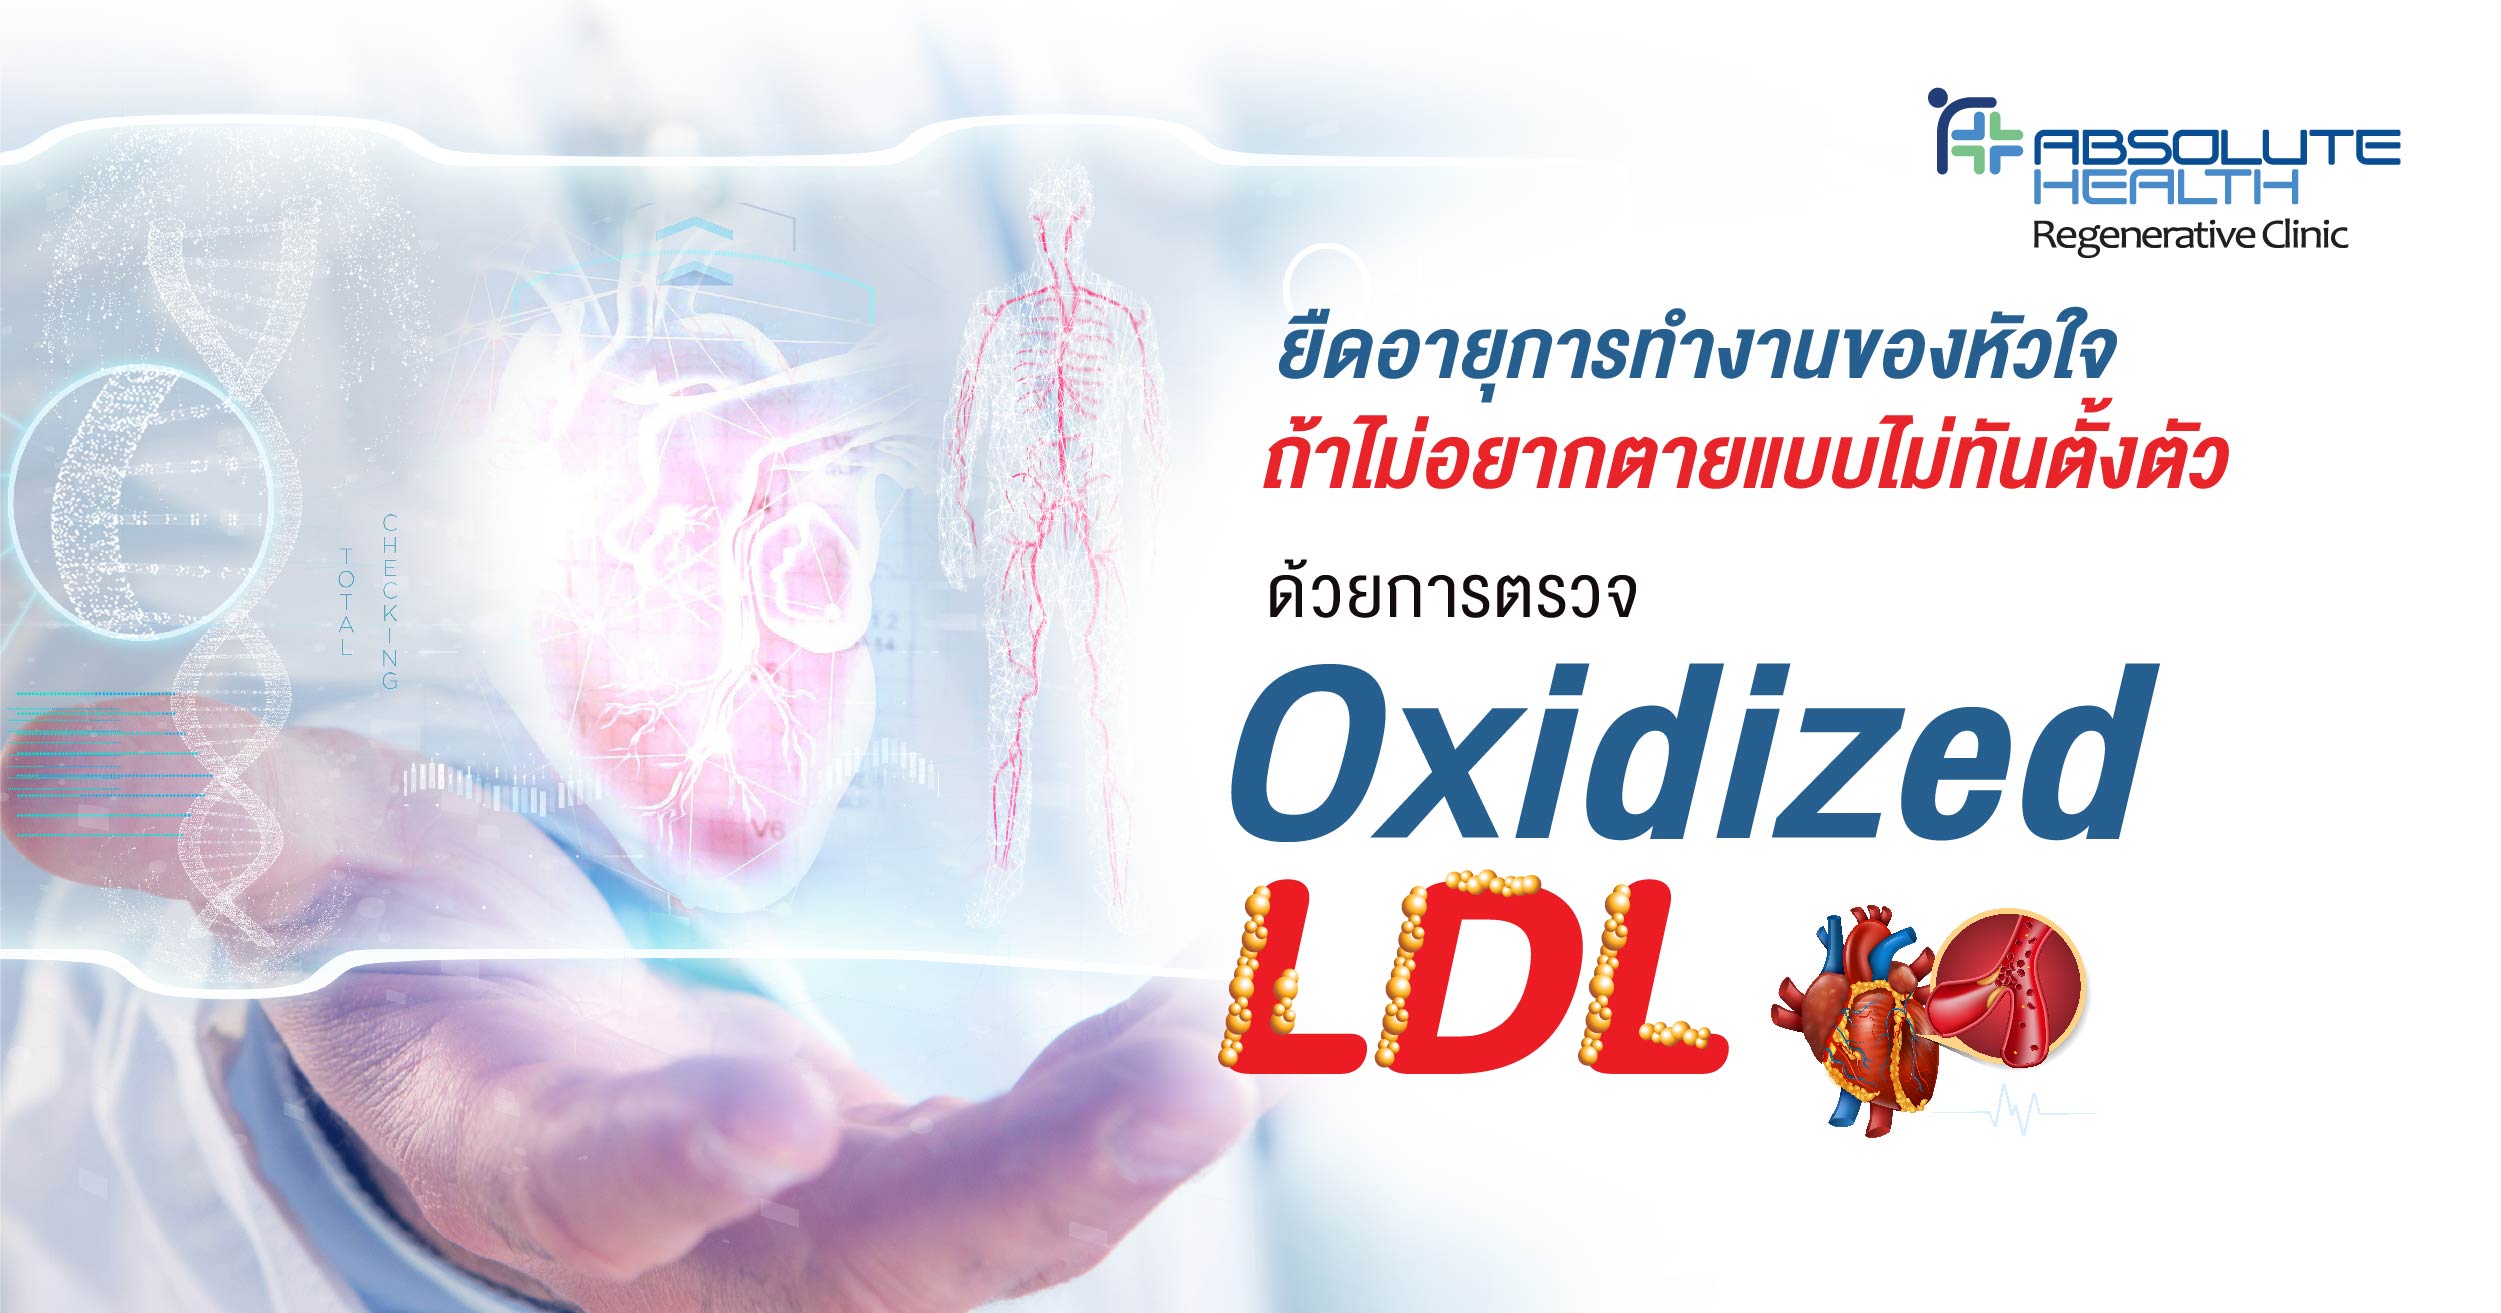 ยืดอายุการทำงานของหัวใจ  ถ้าไม่อยากตายแบบไม่ทันตั้งตัว ด้วยการตรวจ Oxidized LDL